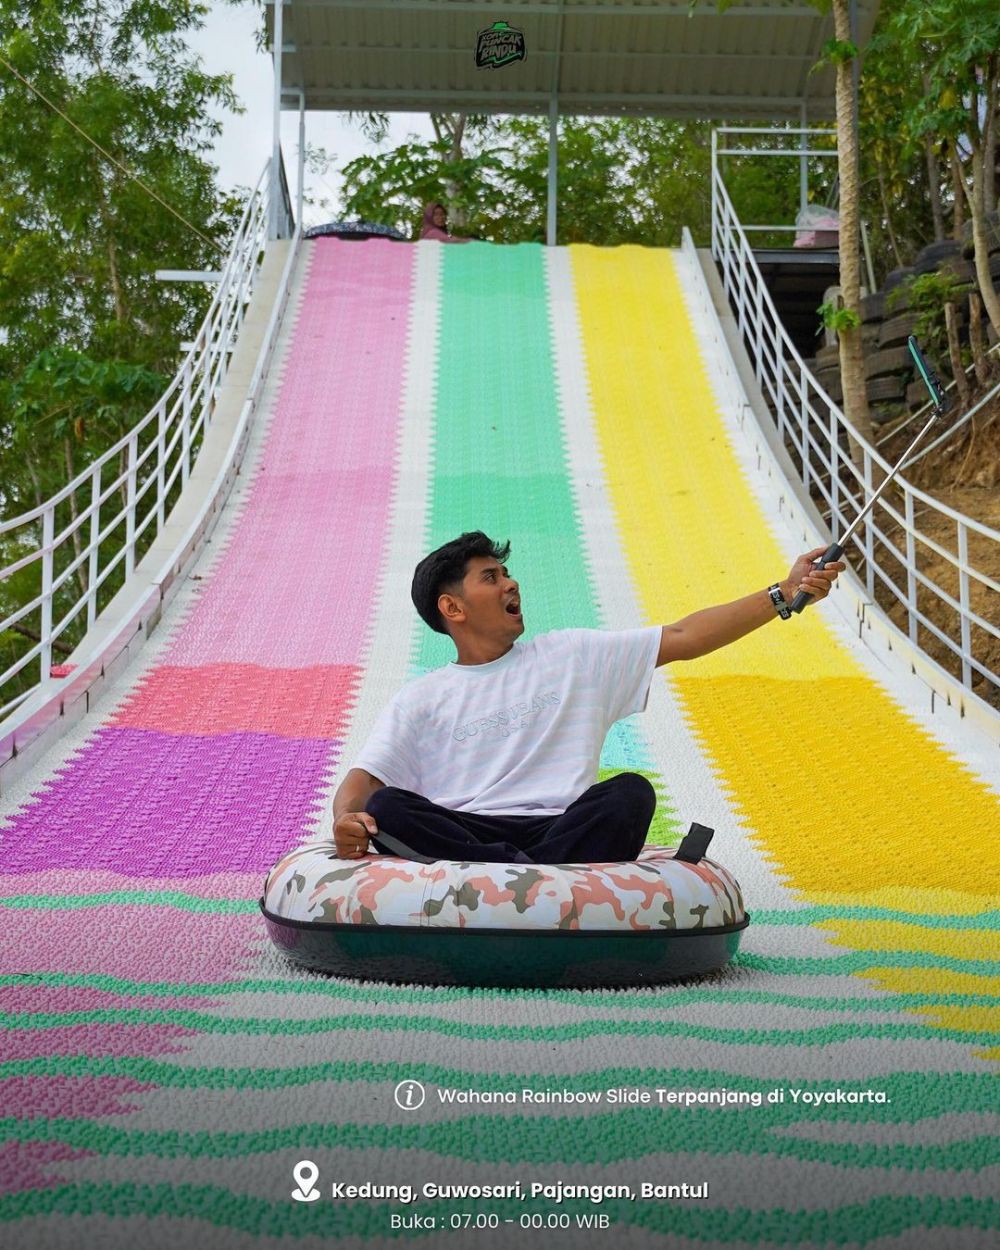 5 Spot Main Rainbow Slide di Jogja, Penyuka Tantangan Wajib Coba